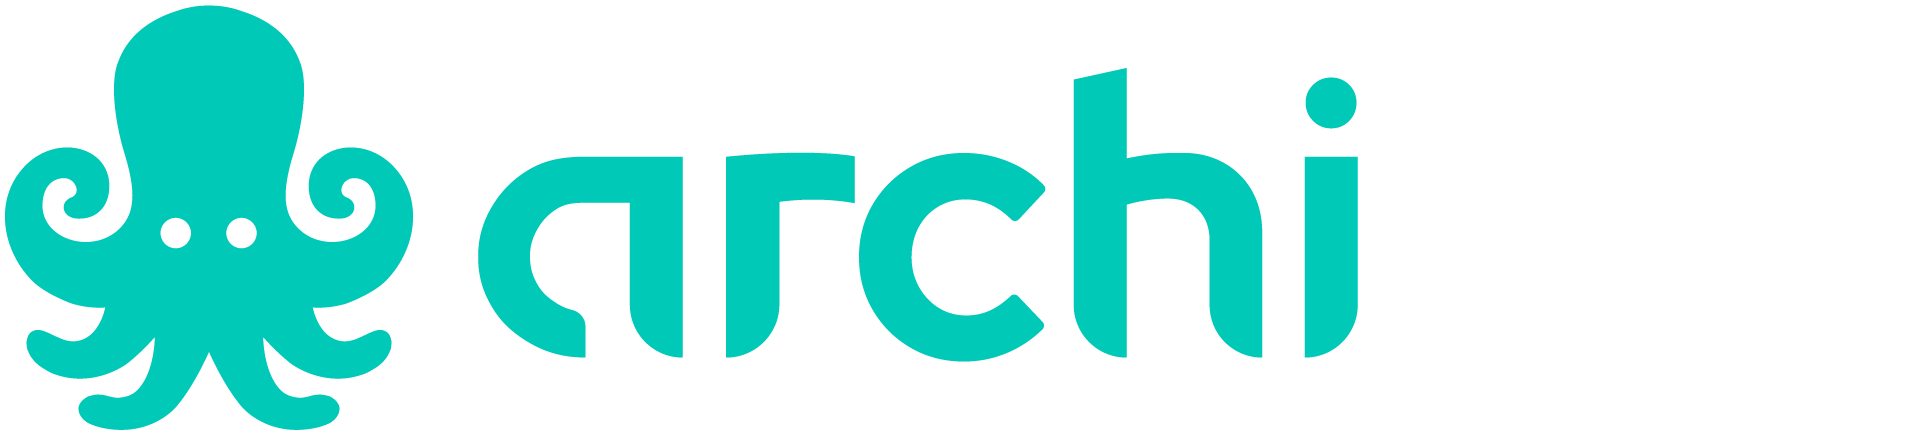 Archipel-logo-aqua-white-RGB